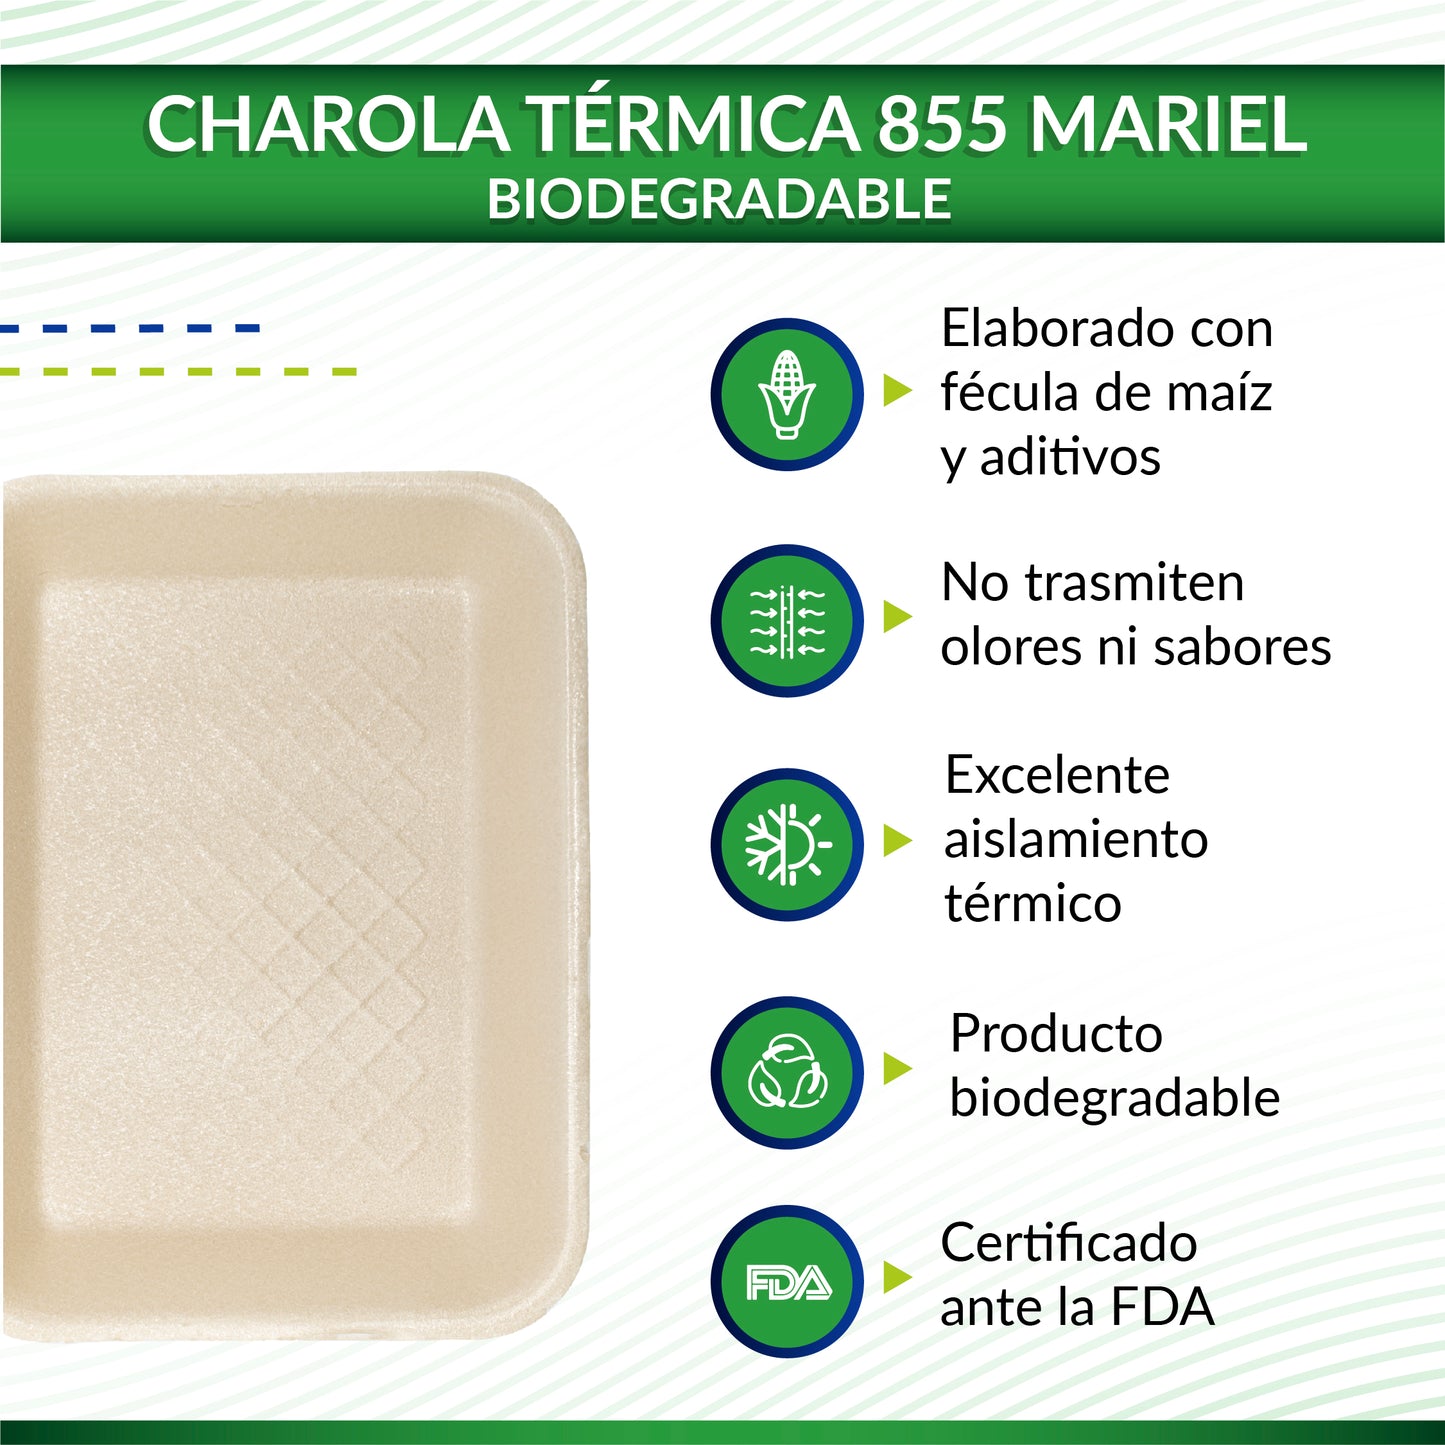 Charola térmica bio Mariel 855